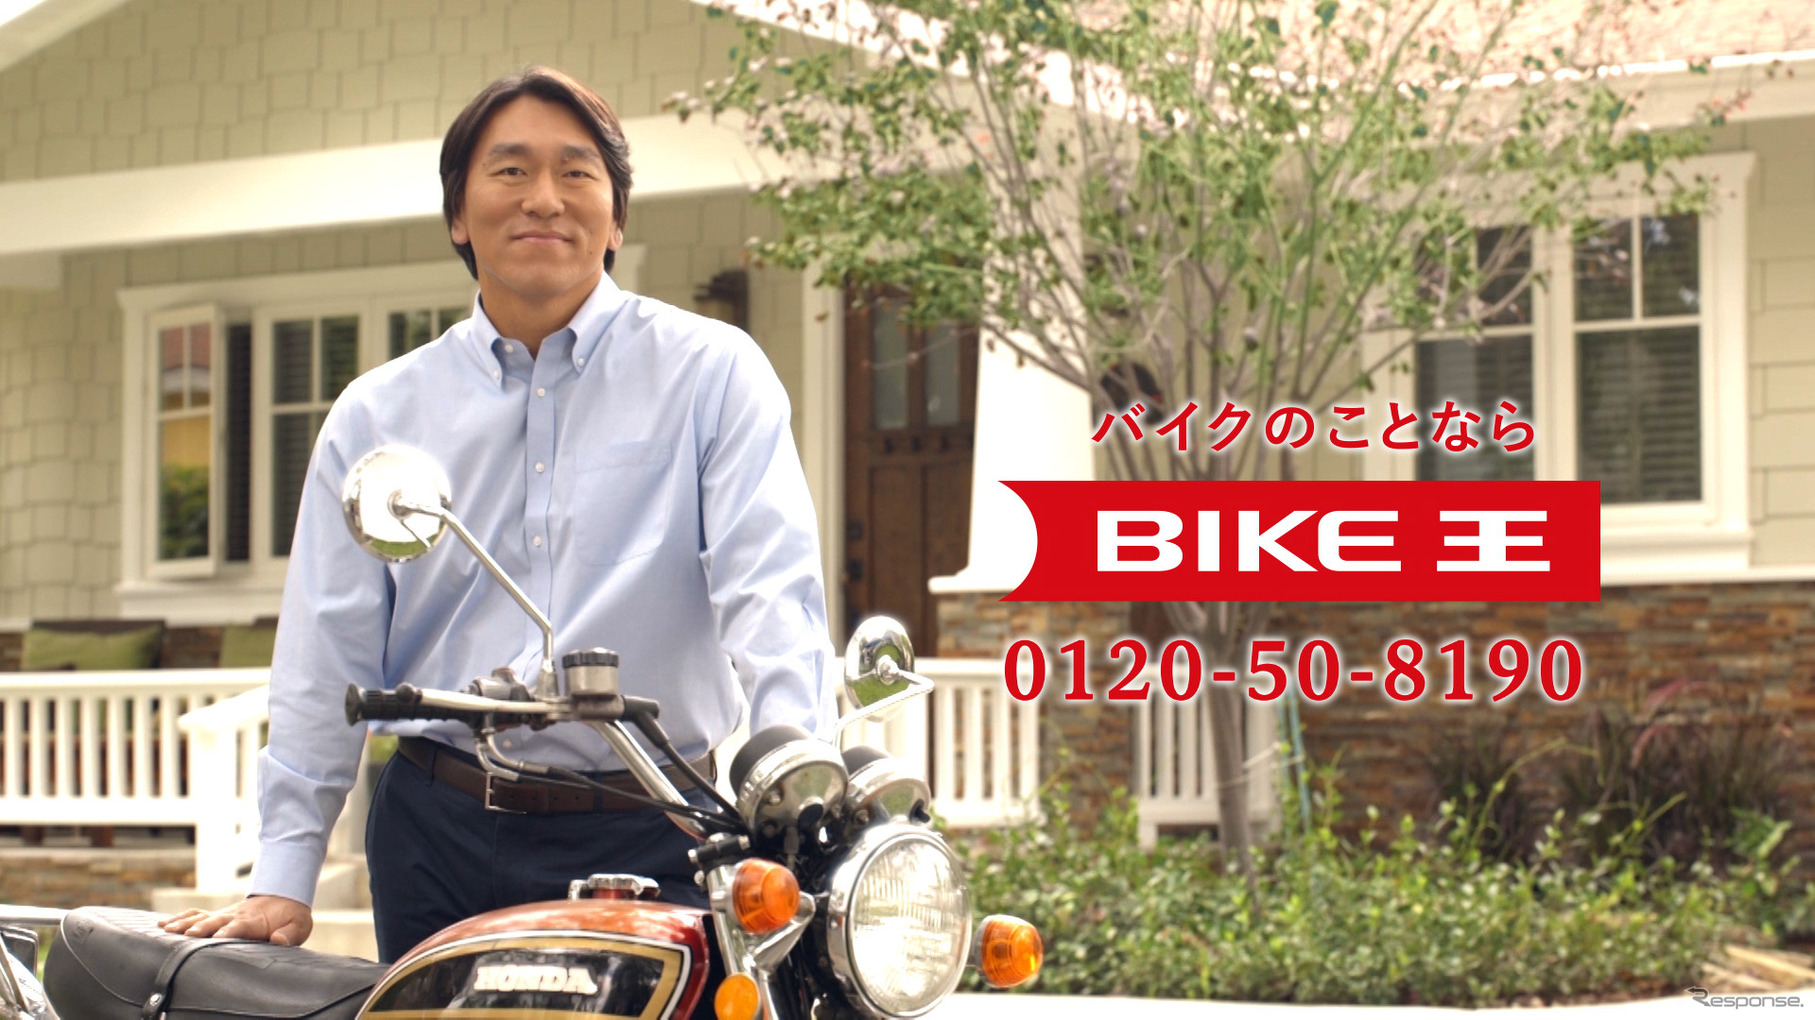 「バイクライフの生涯パートナー」を目指し、一新されたロゴマークとイメージキャラクタの松井秀喜氏